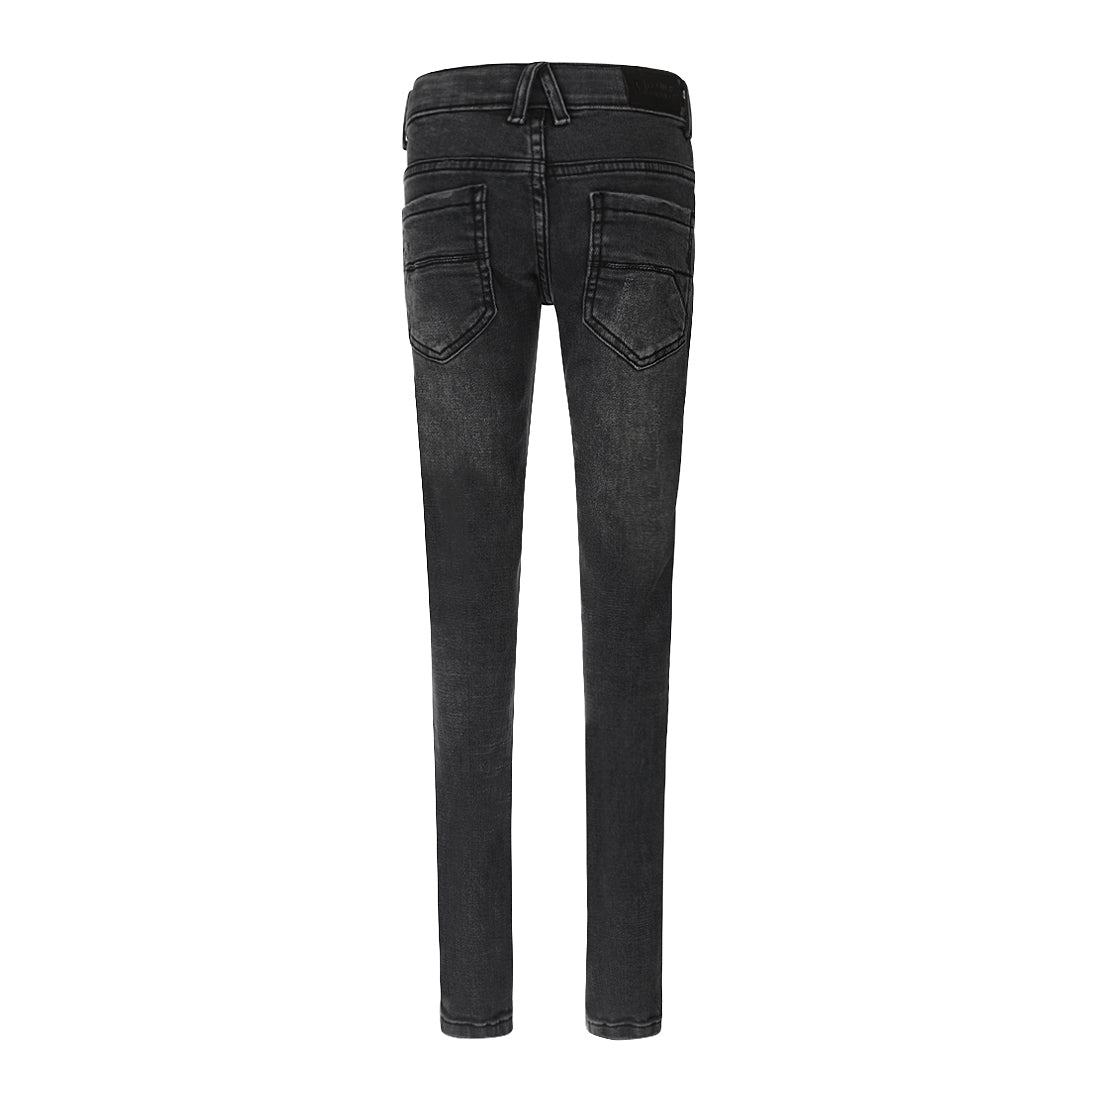 Jongens Jeans Skinny van No Way Monday in de kleur Black jeans in maat 164.